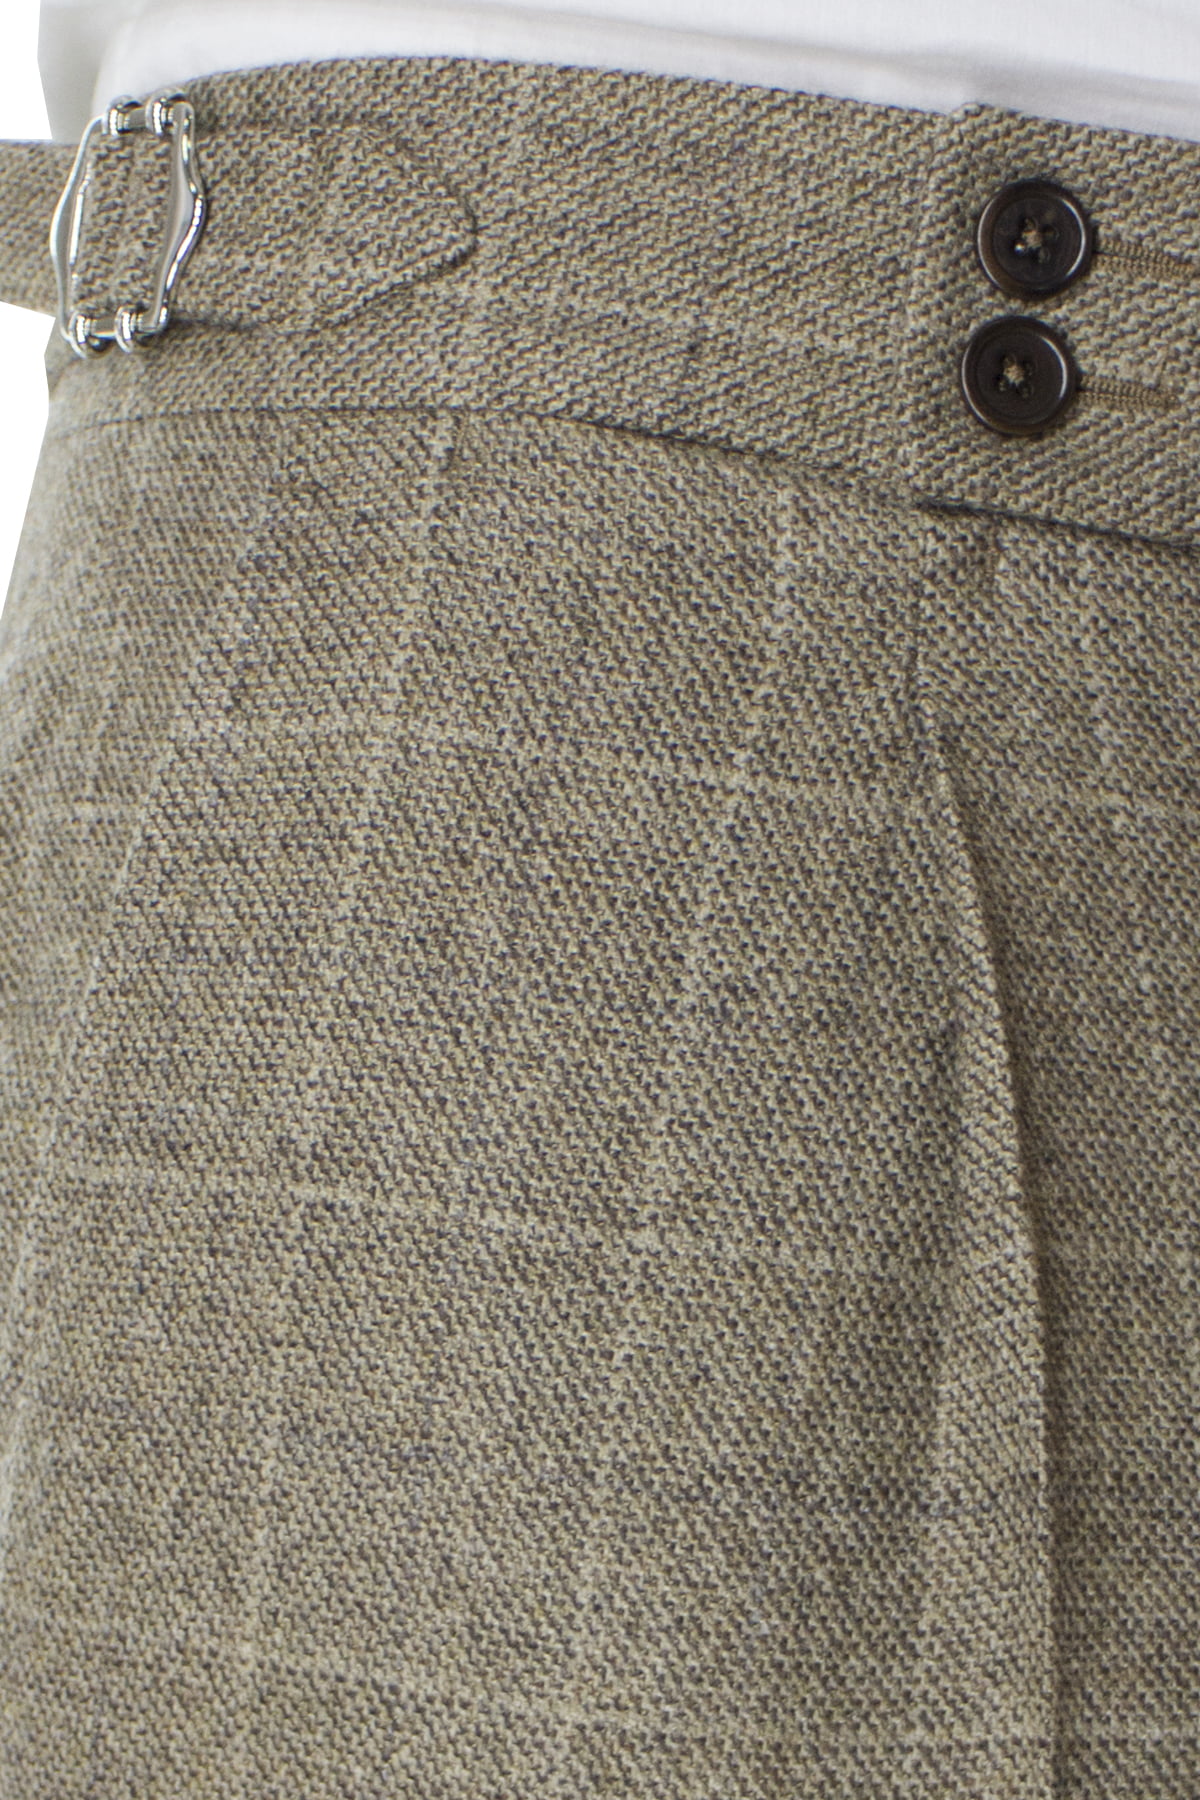 Pantalone uomo beige fantasia quadri in lana vita alta con pinces e fibbie laterali vitale barberis canonico